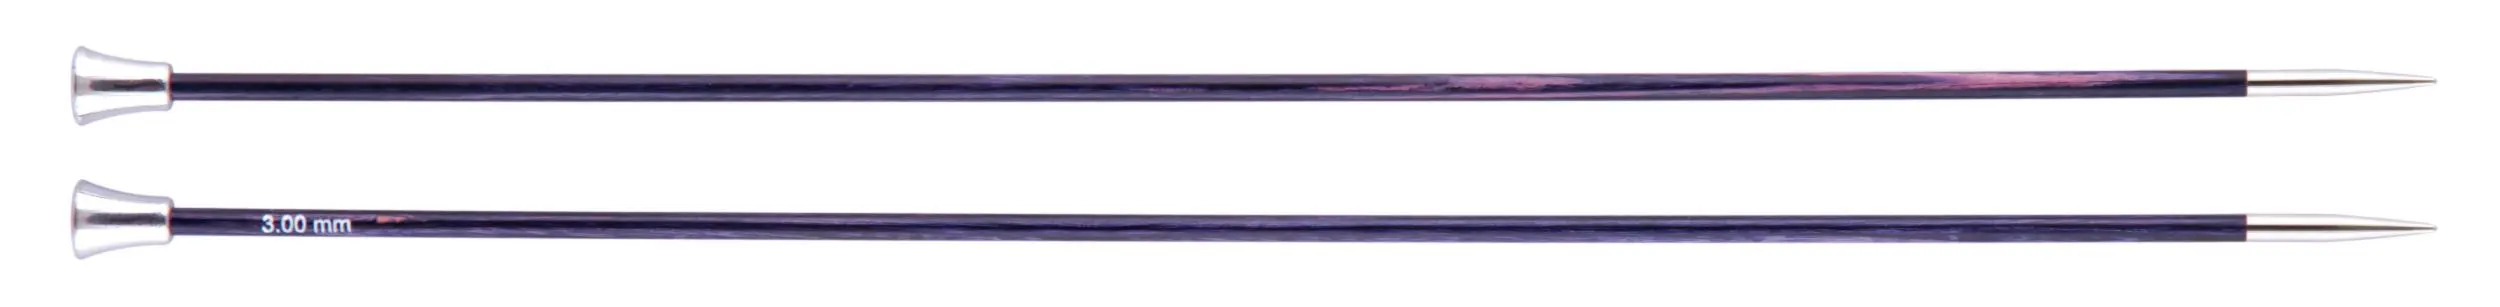 29171 Спиці прямі Royale KnitPro, 25 см, 3.00 мм